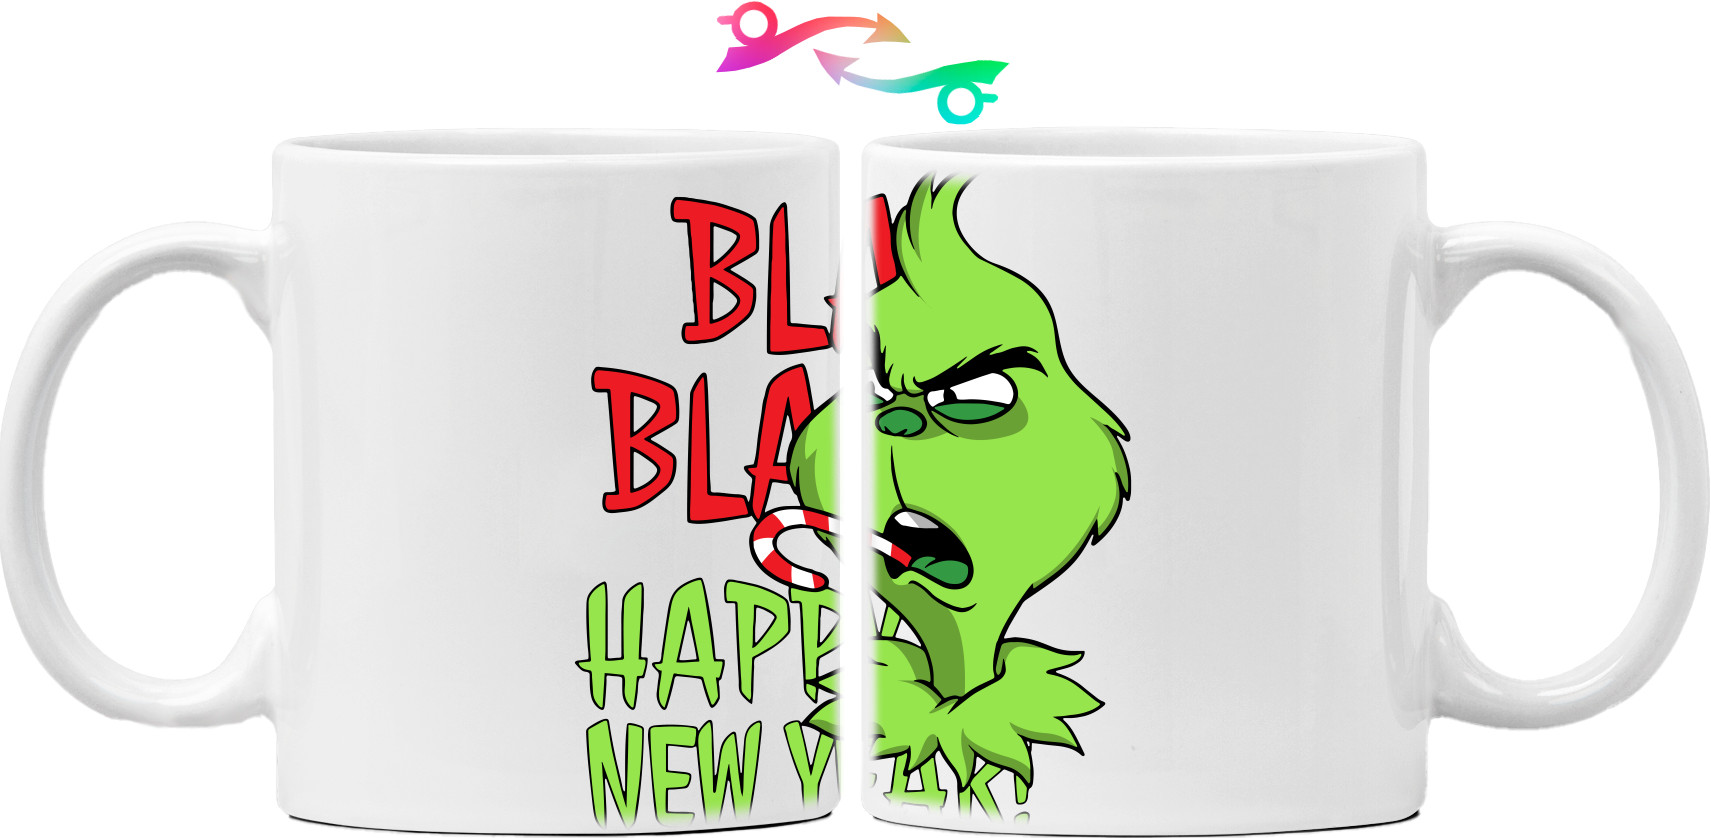 Bla Bla Happy New Year!